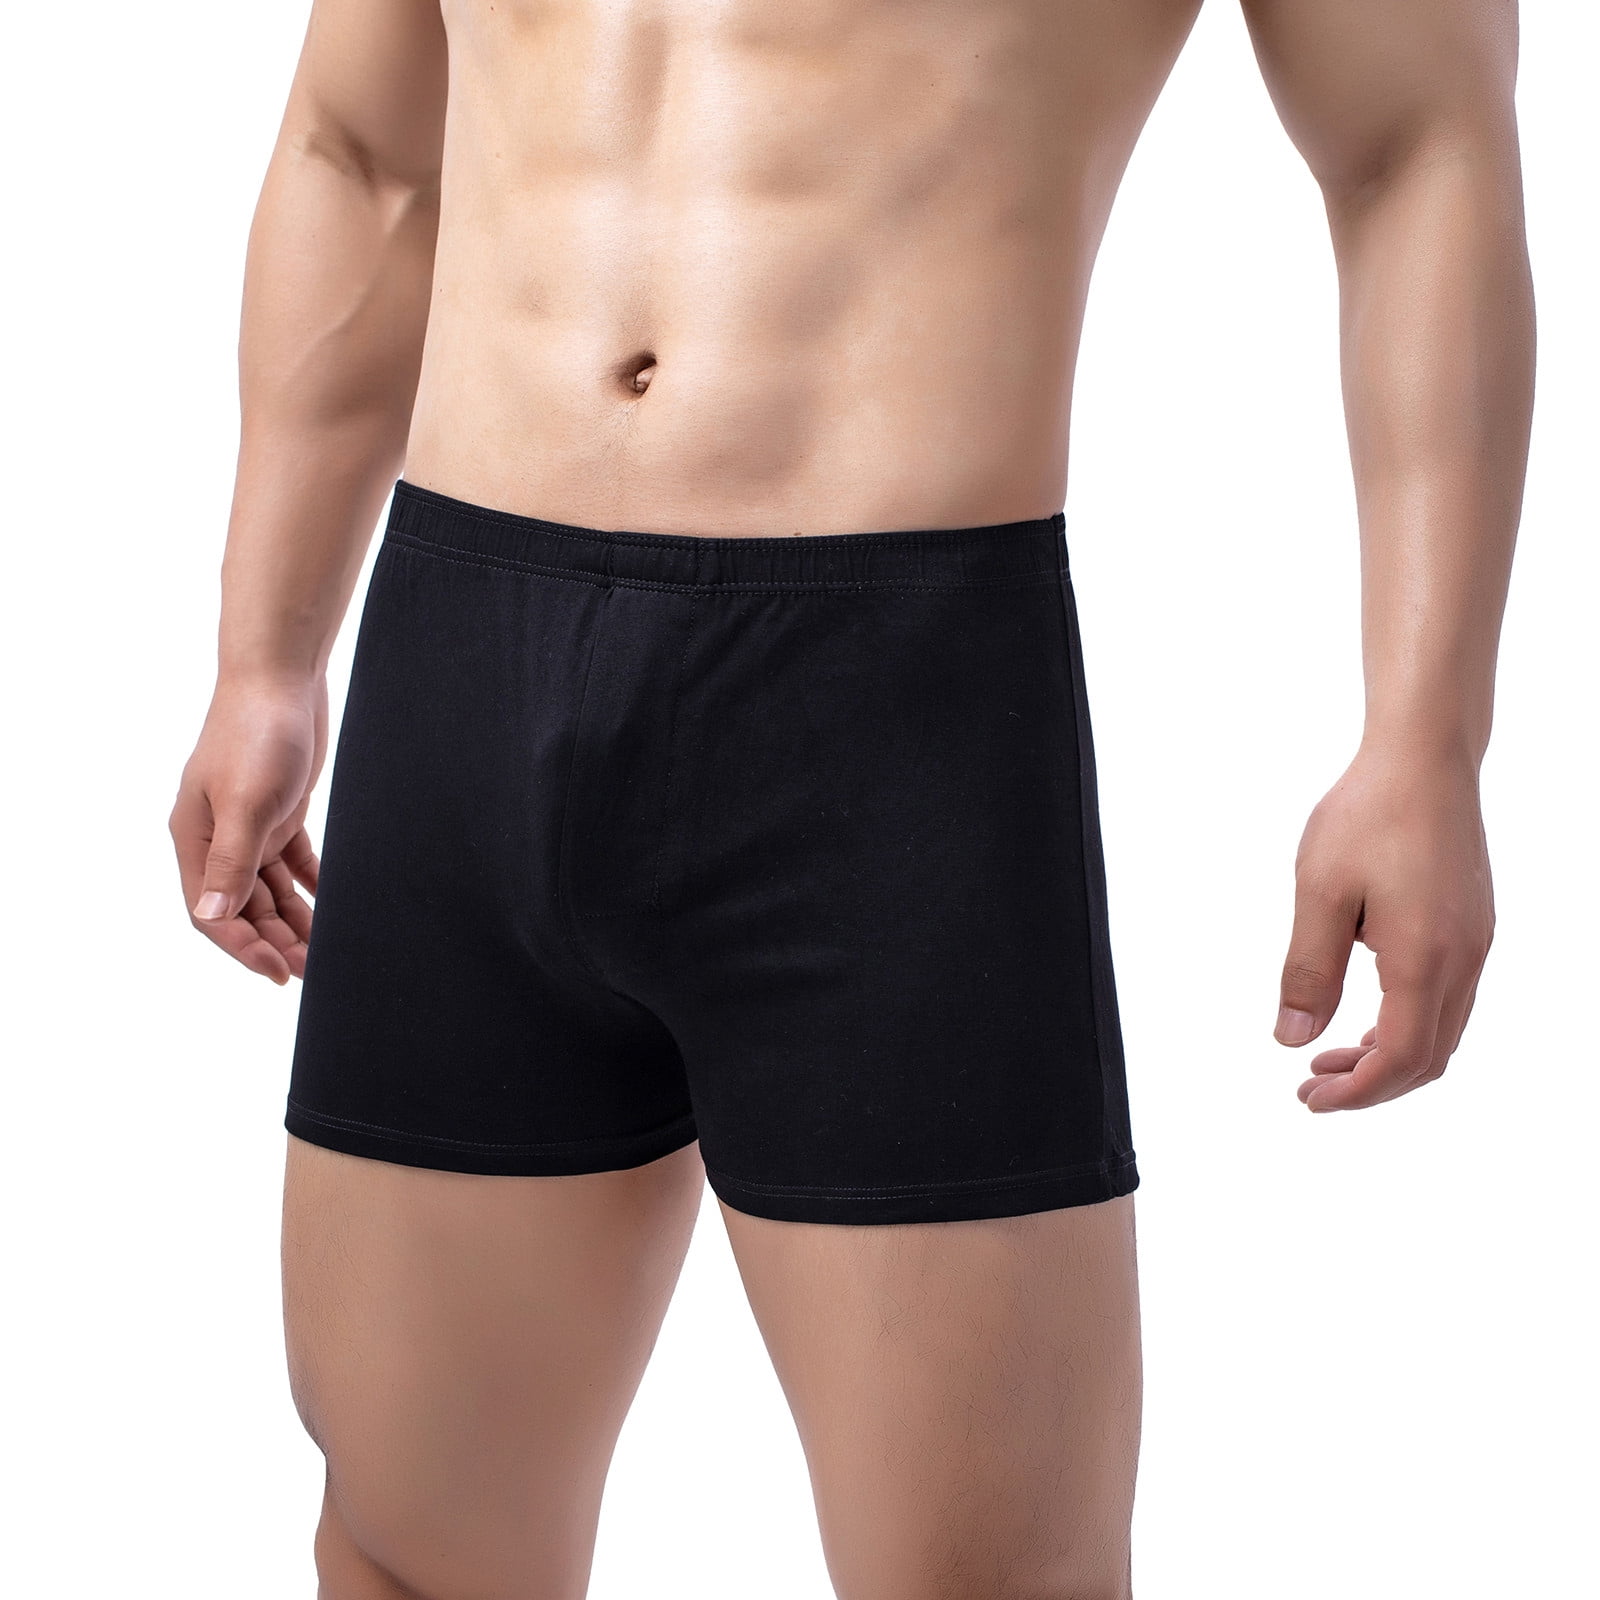 Fauteuil Vervreemden wasserette Underwear for Men Pack Boxers Classic Underwear Solid Black Xxxxl 1-Pack -  Walmart.com